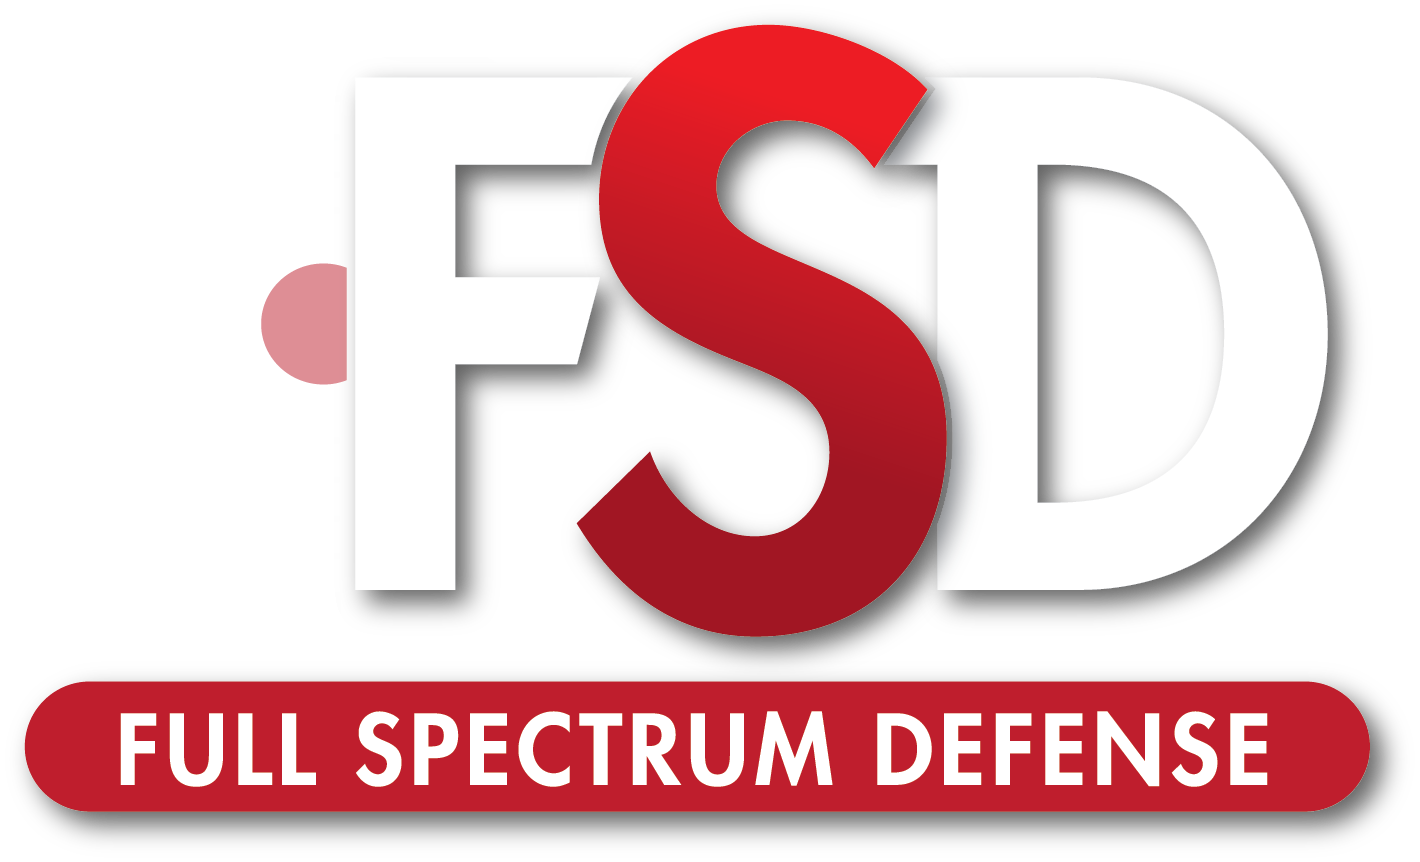 Full Spectrum Defense